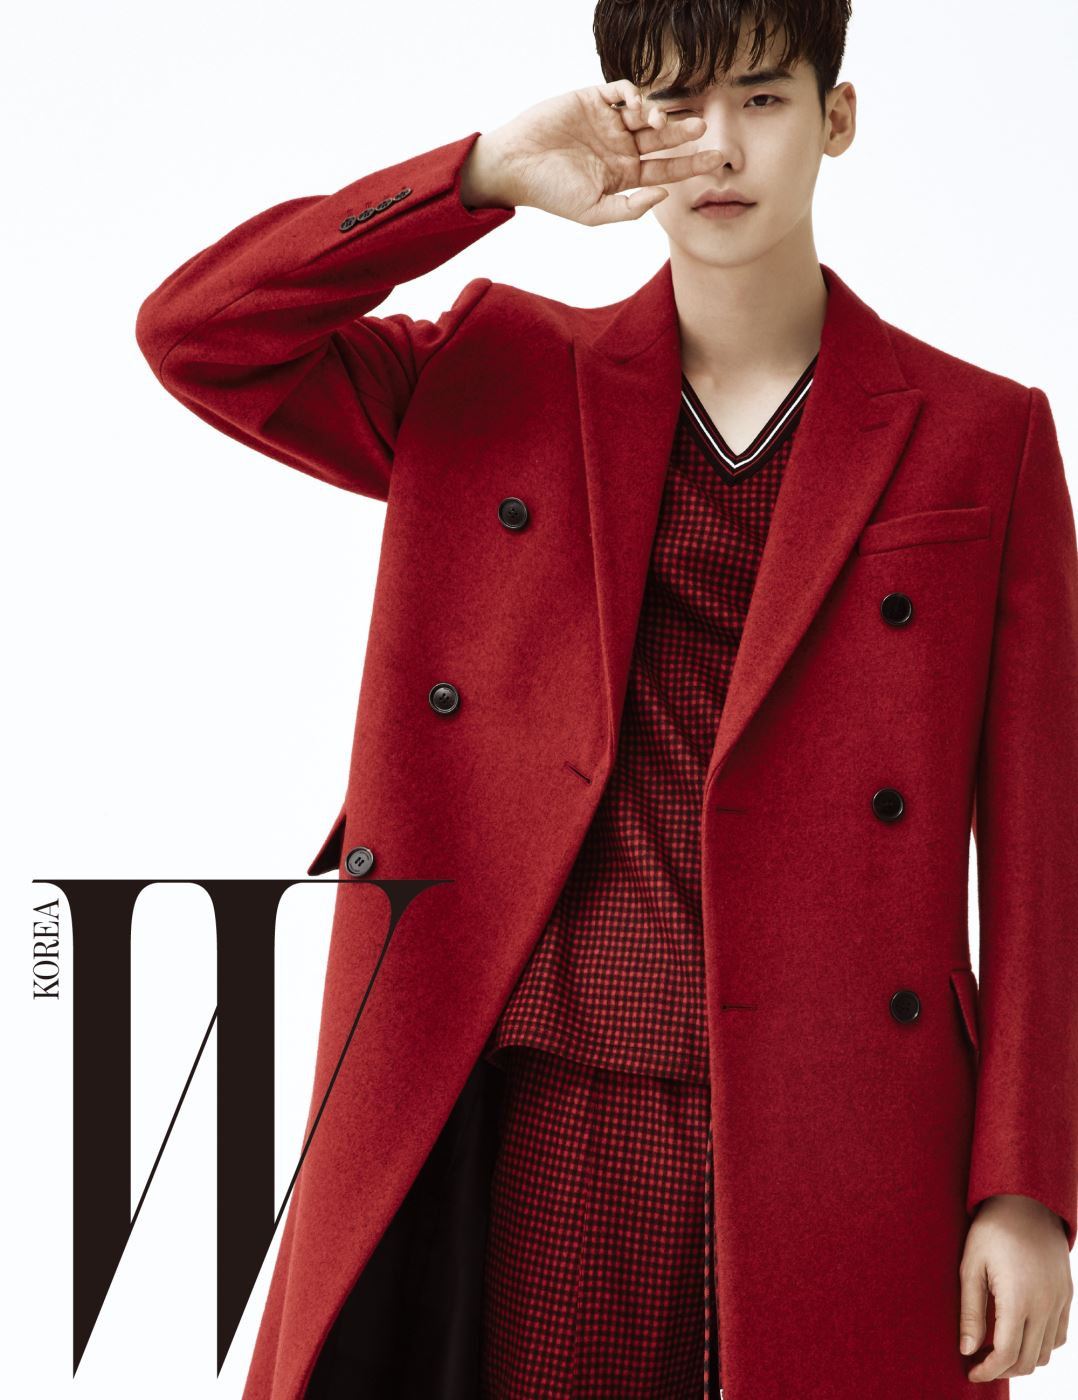 붉은색 테일러드 코트, 플래드 패턴의 캐주얼한 브이 네크라인 톱과 스트링 장식 팬츠는 모두 Dior 제품.